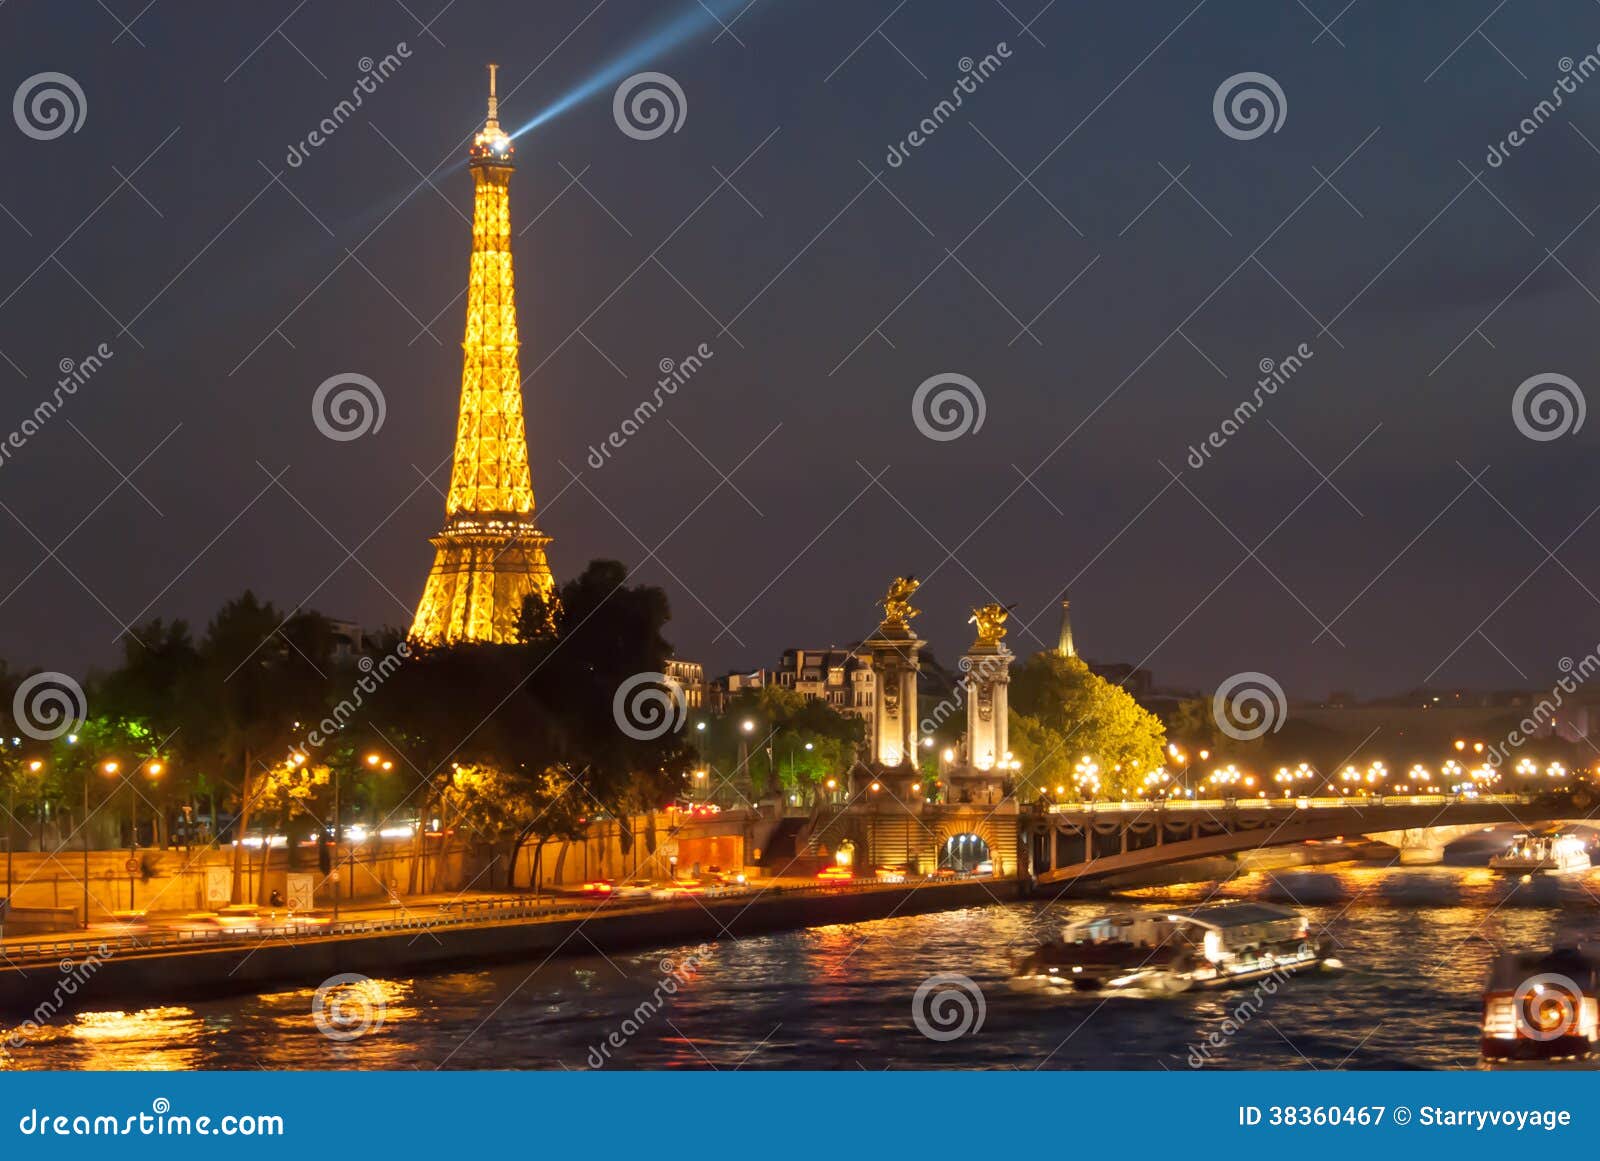 Torre Eiffel E Alexander Bridge Alla Notte Fotografia Editoriale ...